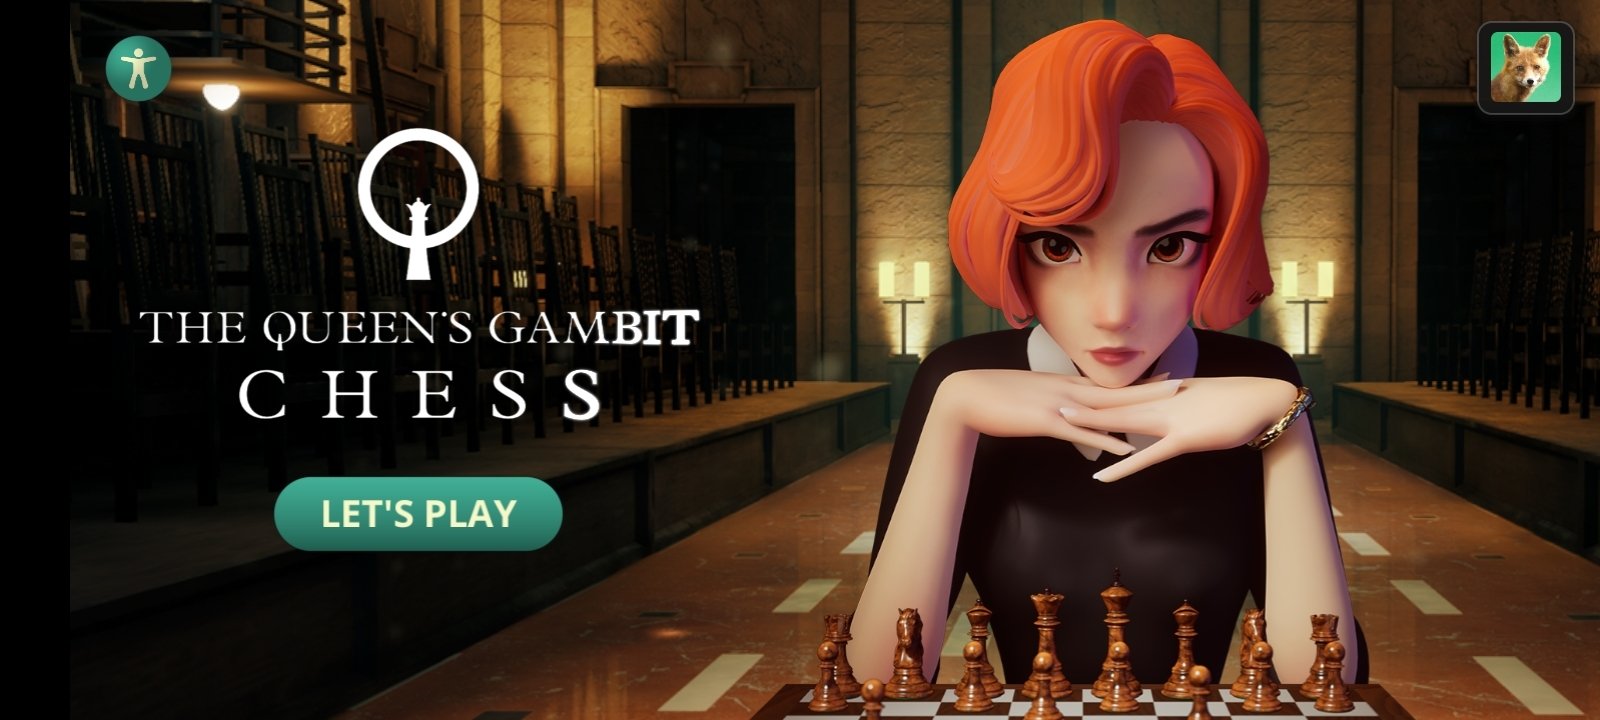 Download do APK de O Gambito da Rainha: Xadrez para Android